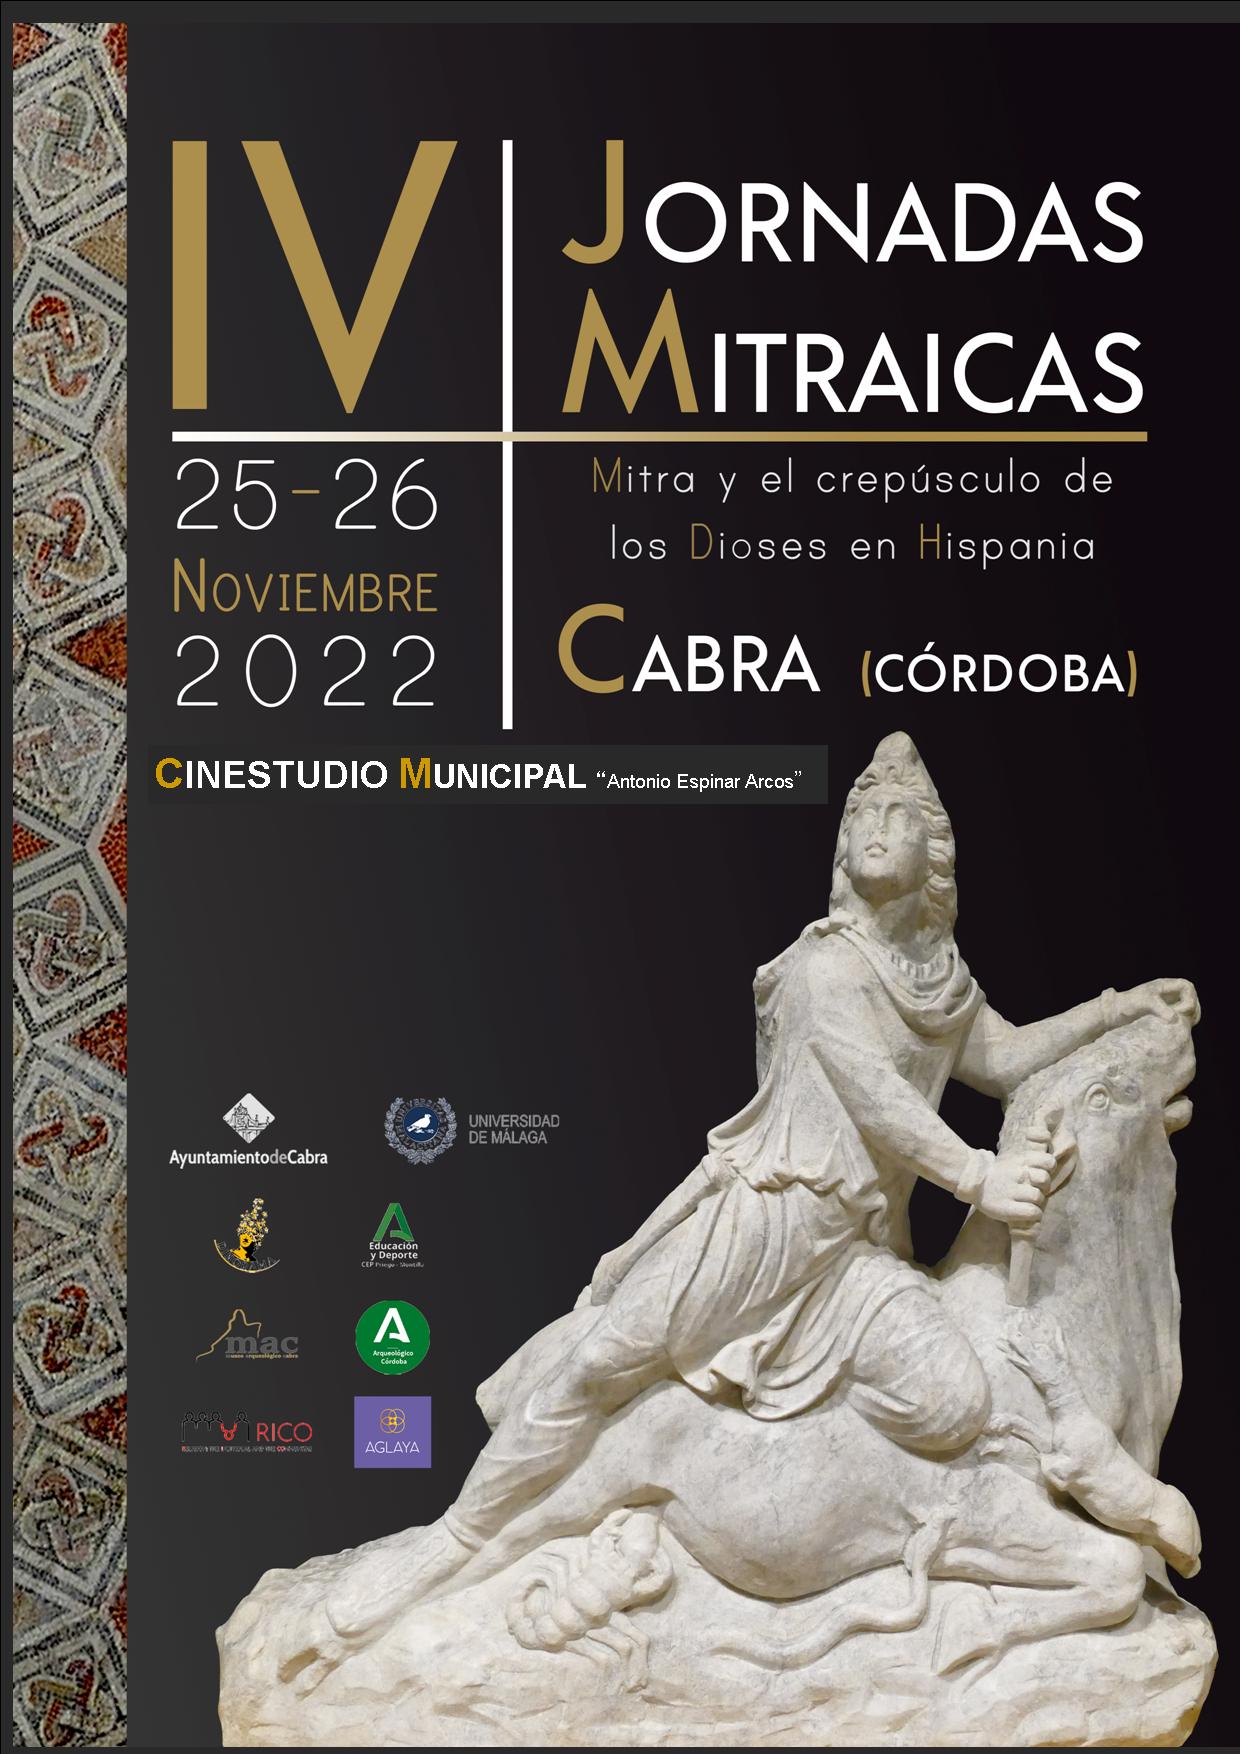 IV JORNADAS MITRAICAS- 25 y 26 de noviembre (CINESTUDIO)